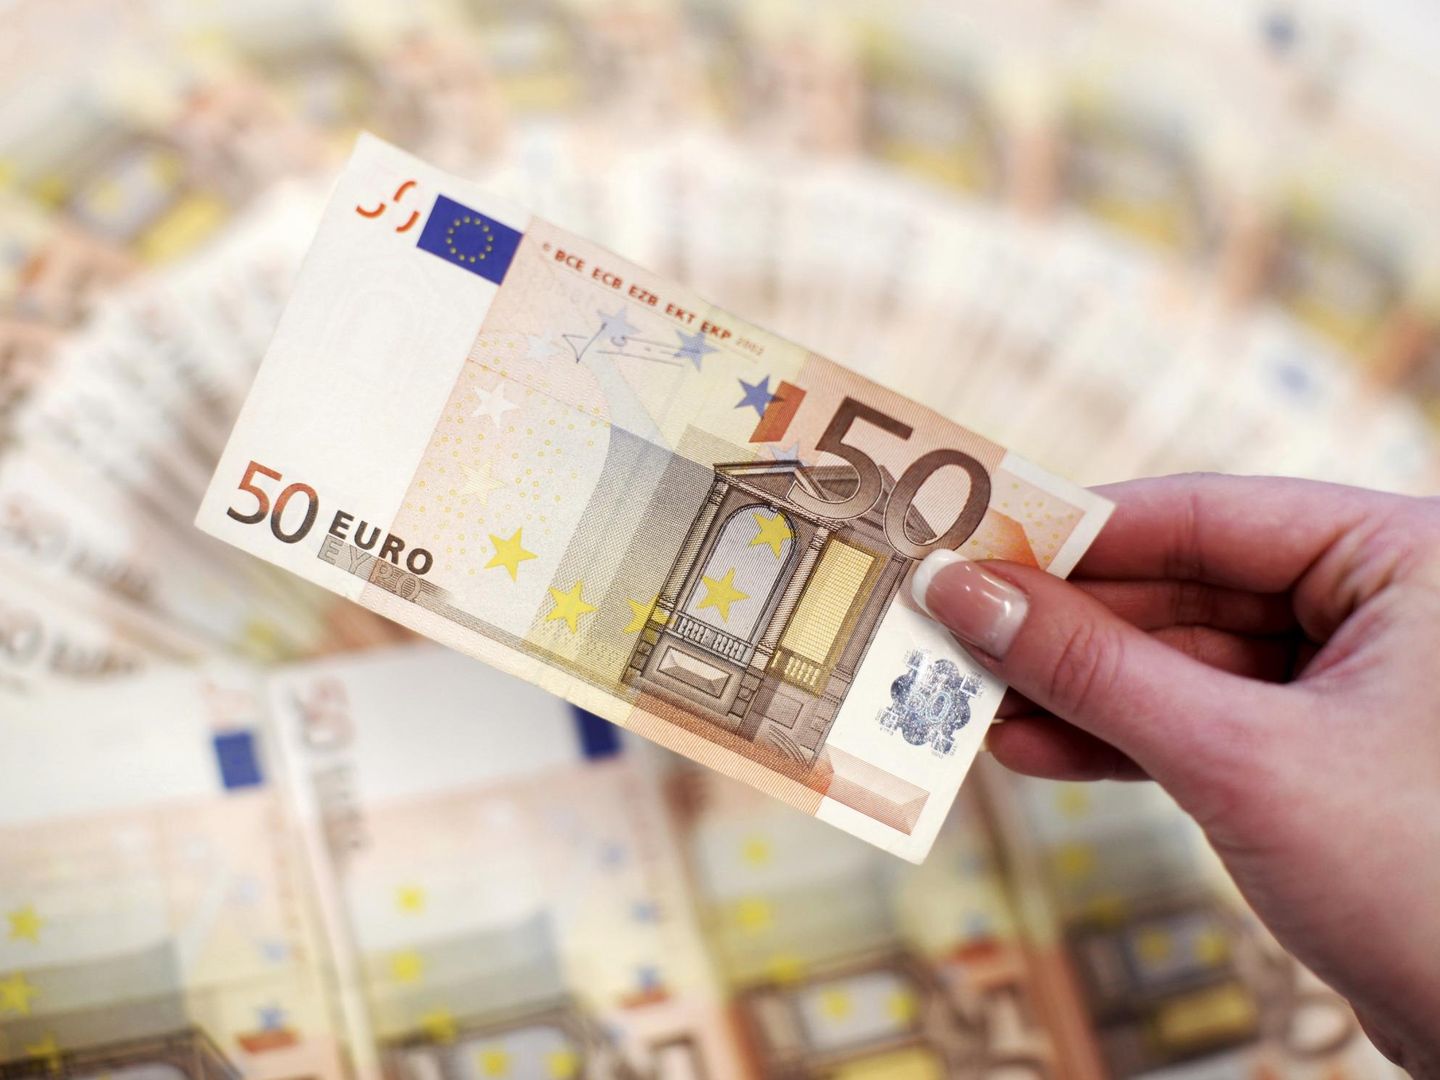 Billetes de 50 euros. (Reuters)